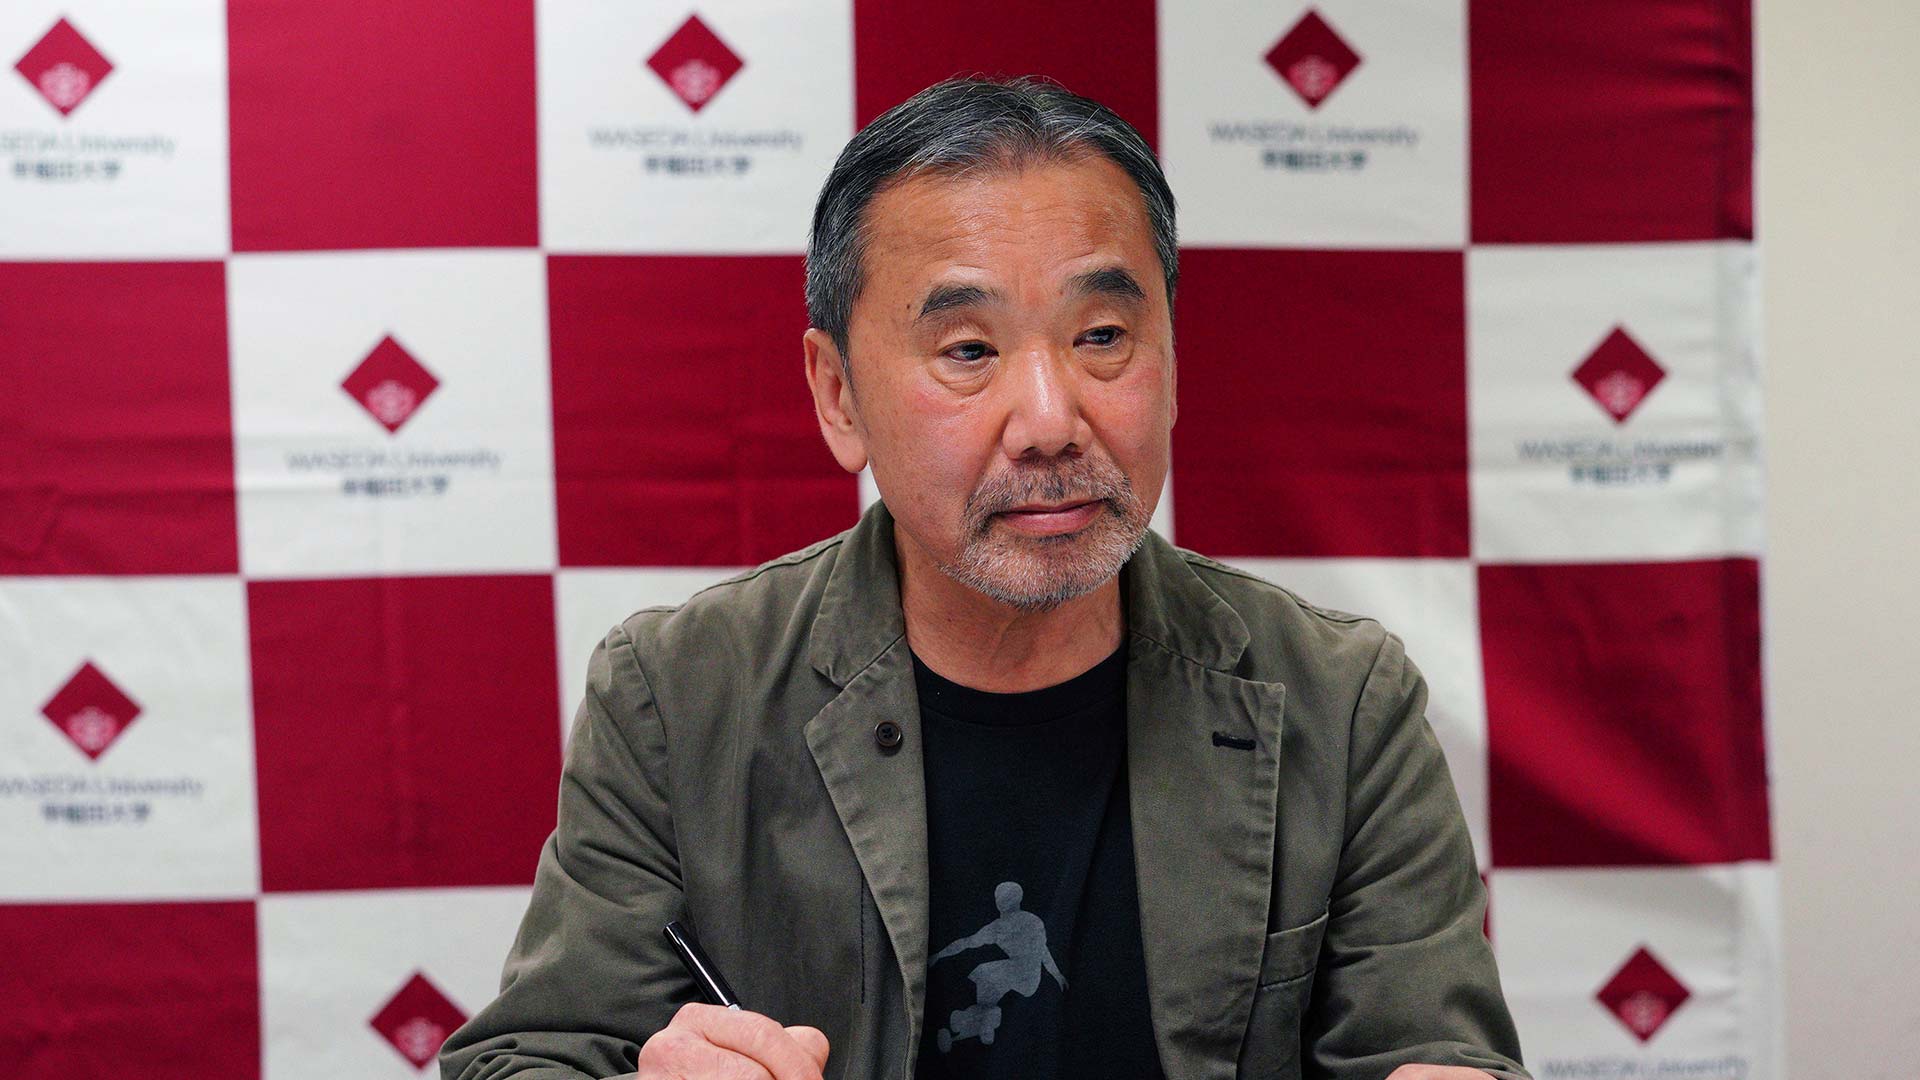 Murakami publicará nuevo libro en julio después de tres años